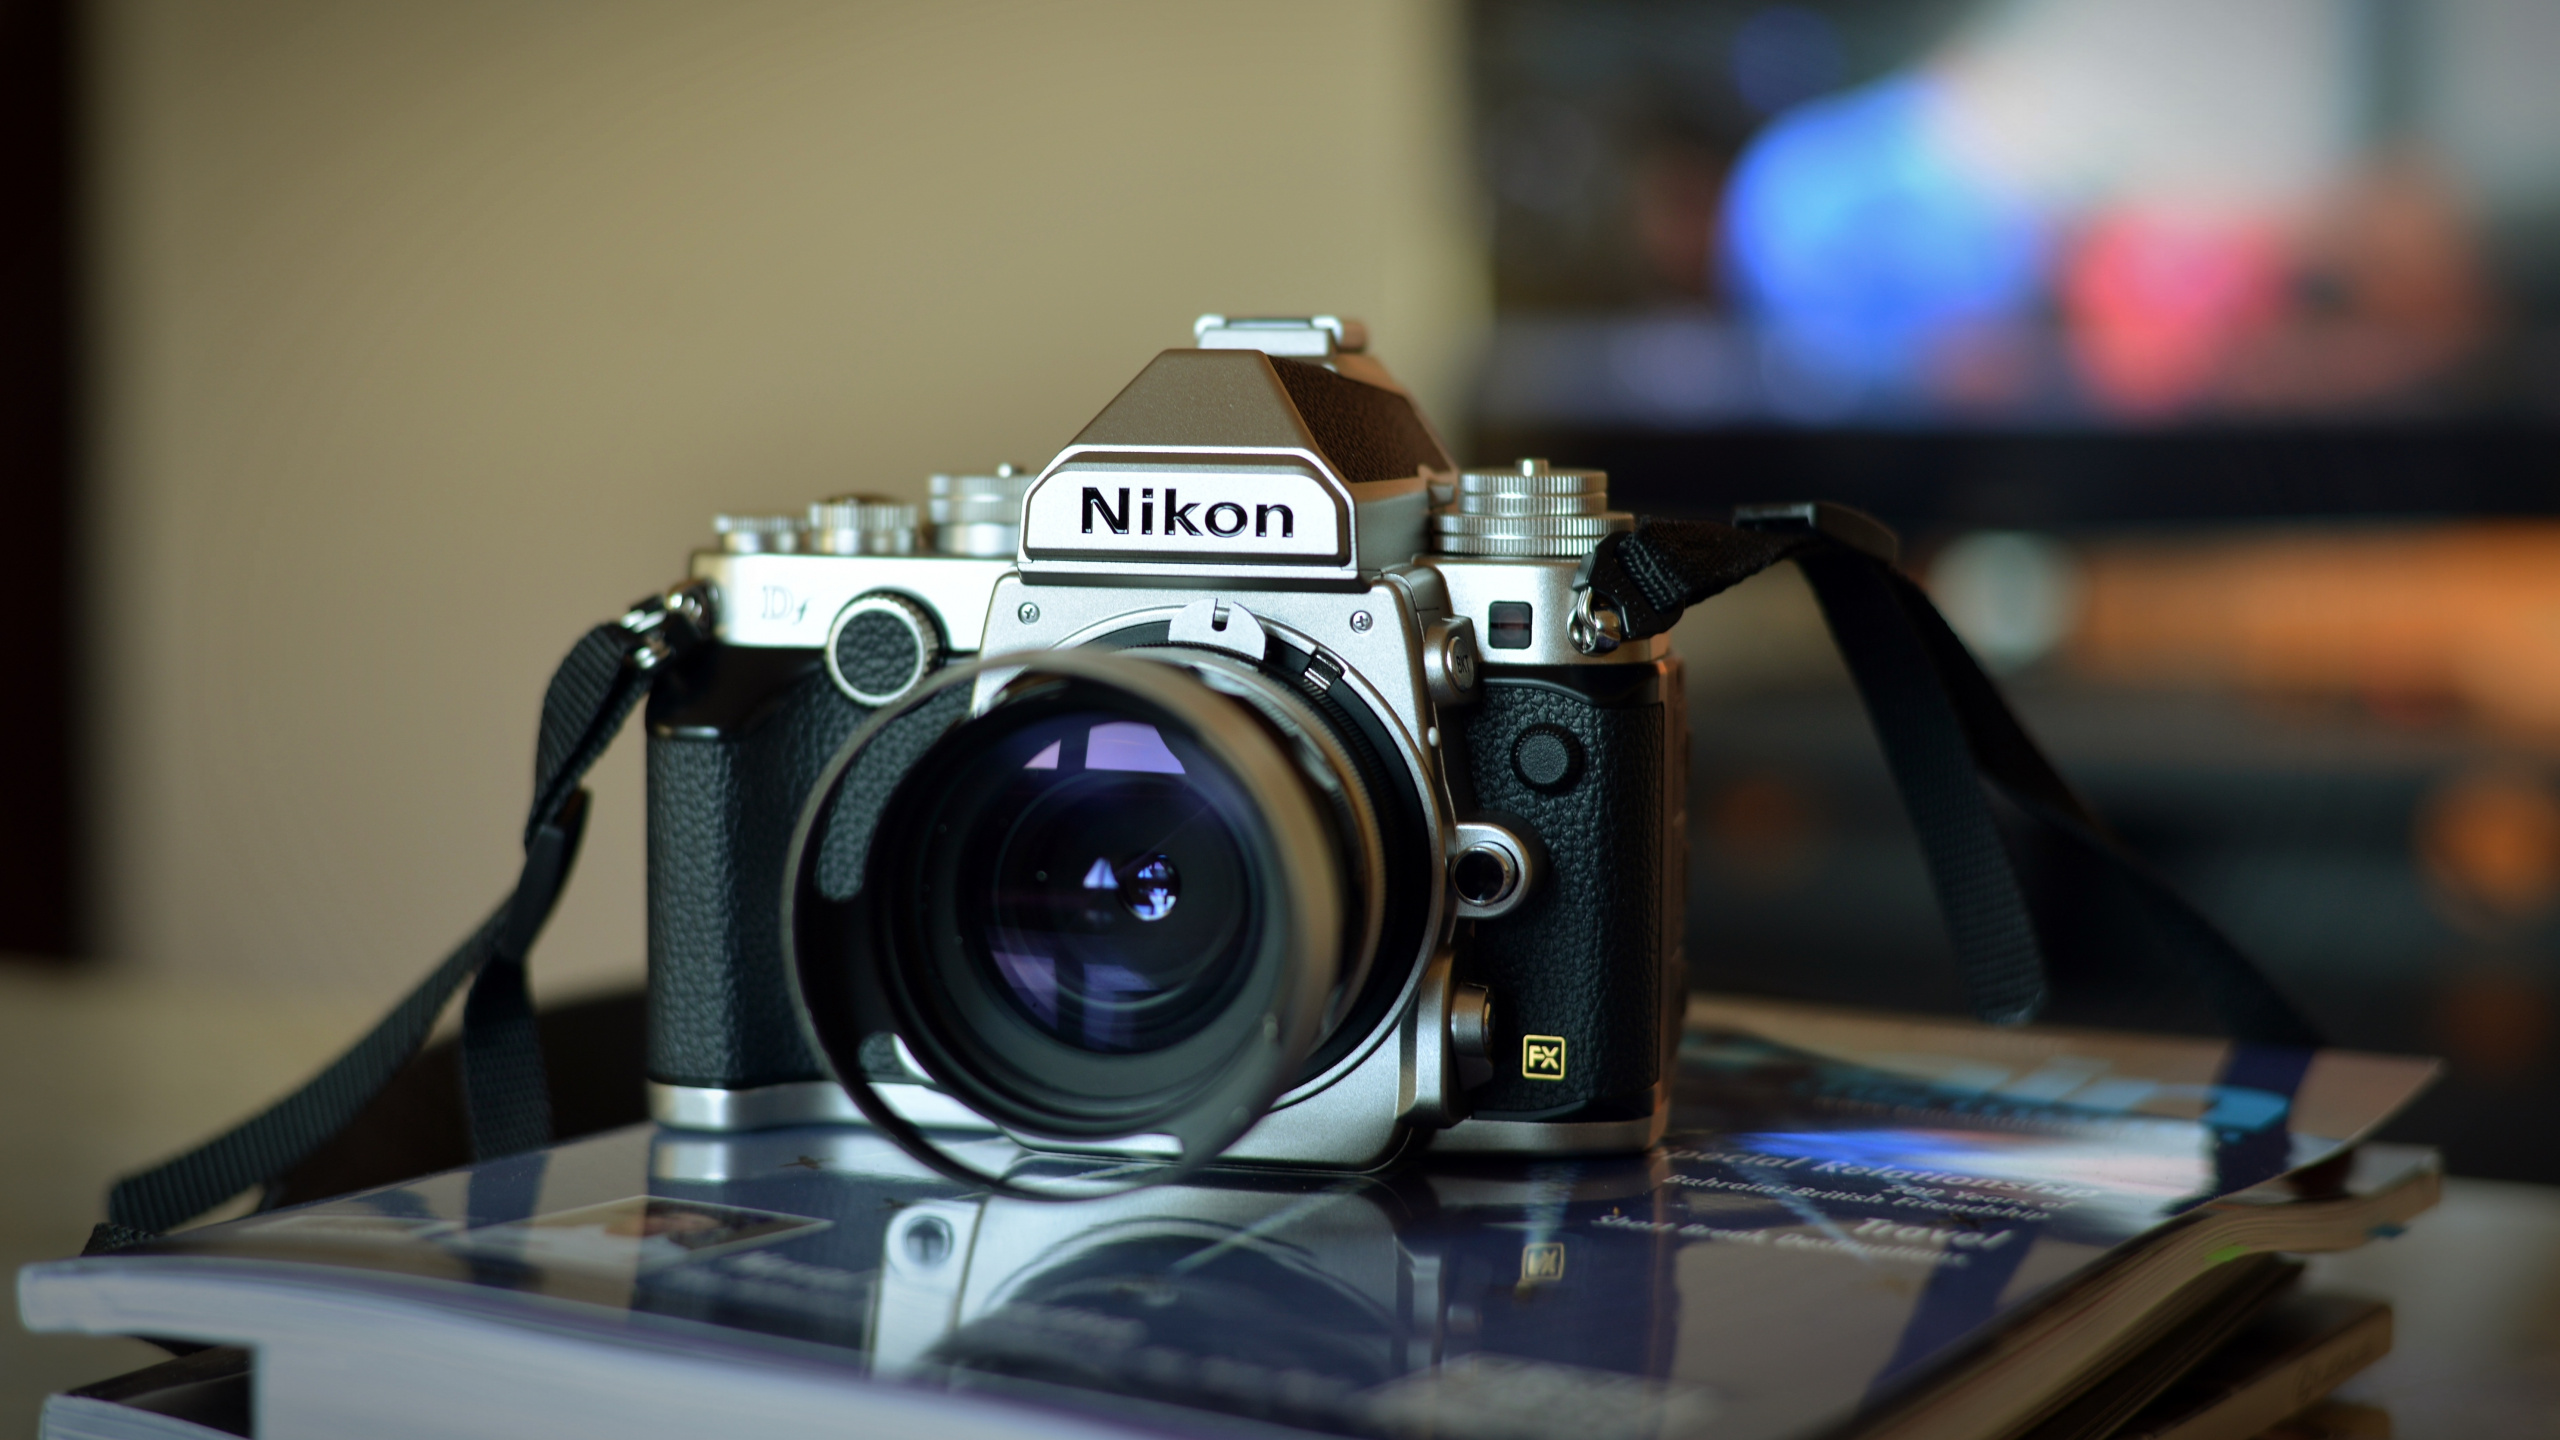 尼康, 光学照相机, 拍摄像头, 摄像机的附件, 数字照相机 壁纸 2560x1440 允许